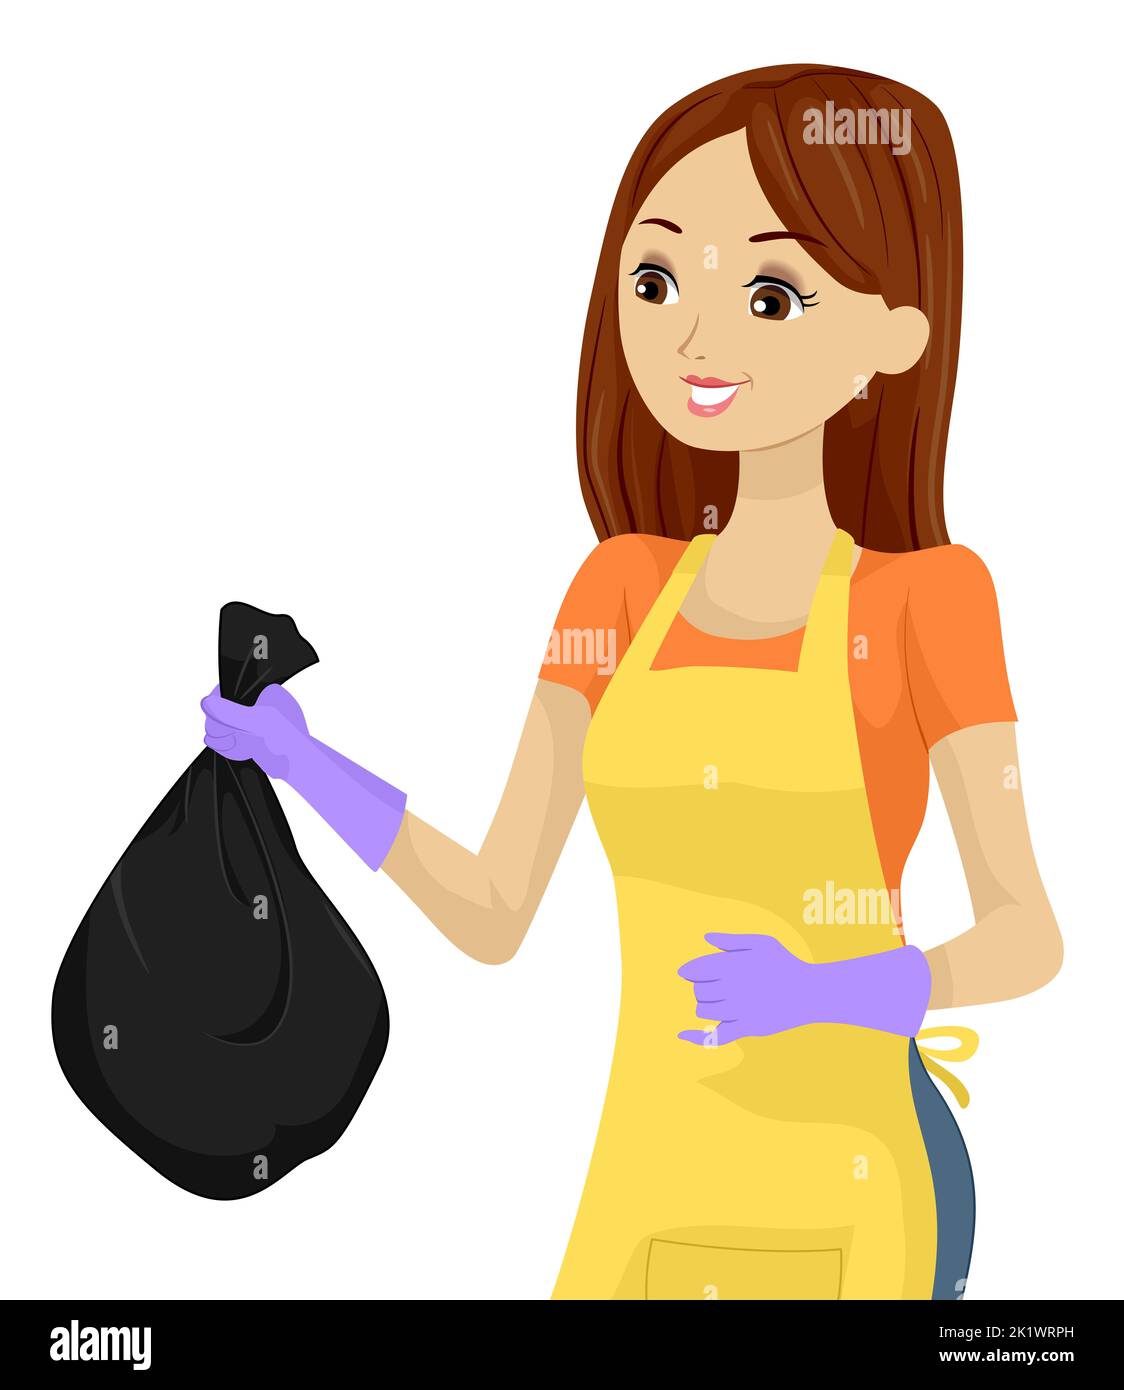 Illustrazione della ragazza teen che indossa grembiule e guanti in gomma che smaltiscono i rifiuti in una busta di plastica nera Foto Stock